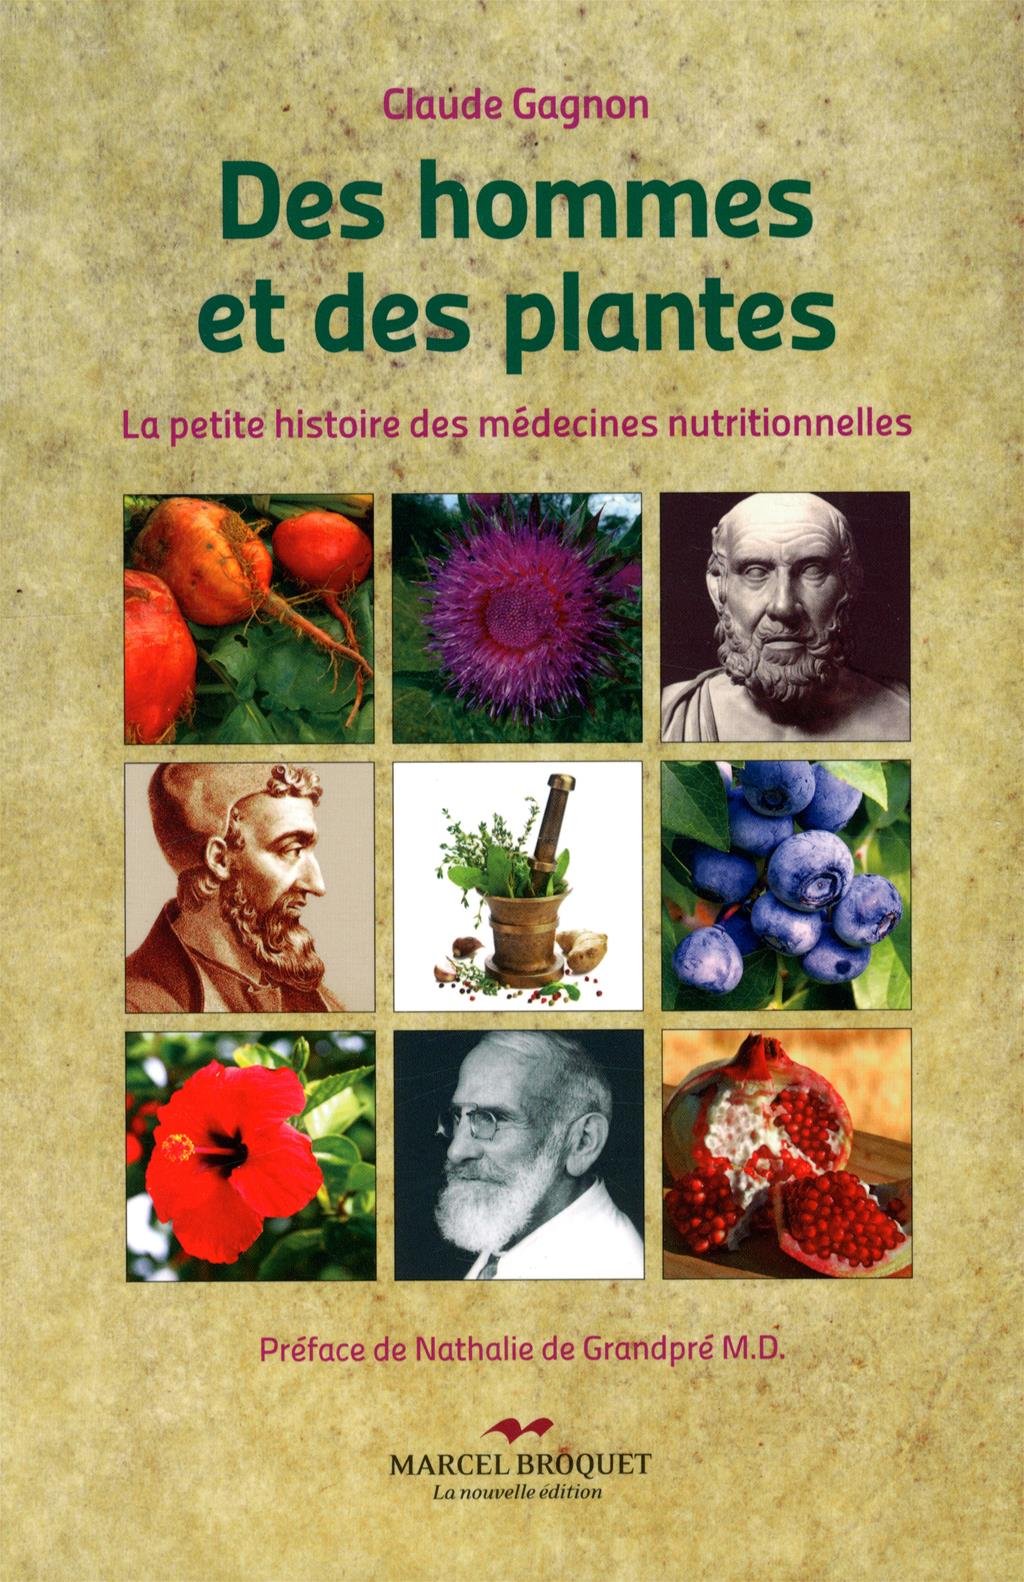 Des hommes et des plantes: La petite histoire des médecines nutritionnelles Gagnon/ Claude